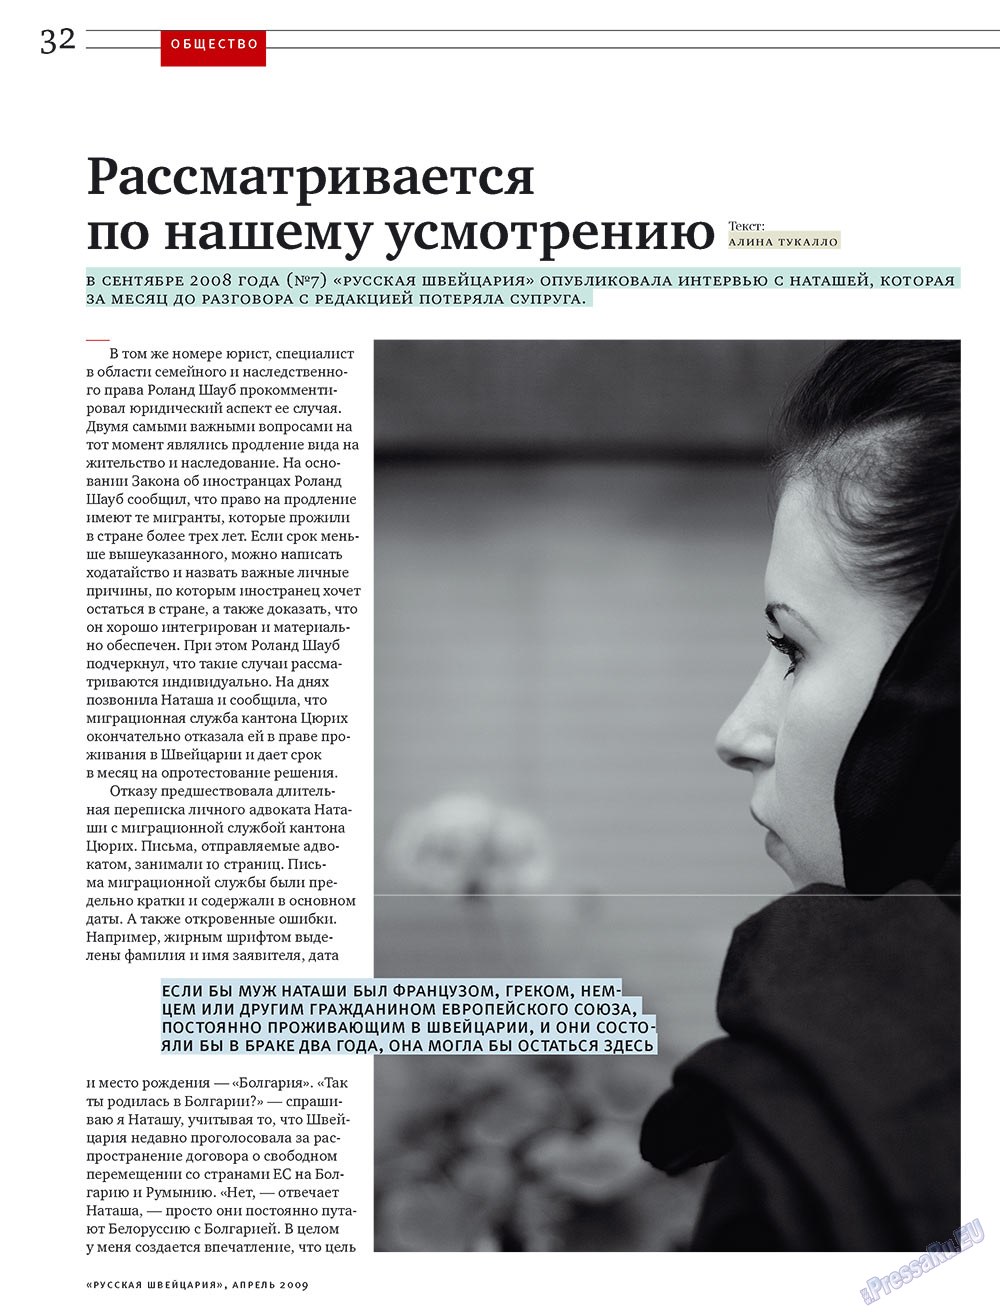 Русская Швейцария, журнал. 2009 №4 стр.32